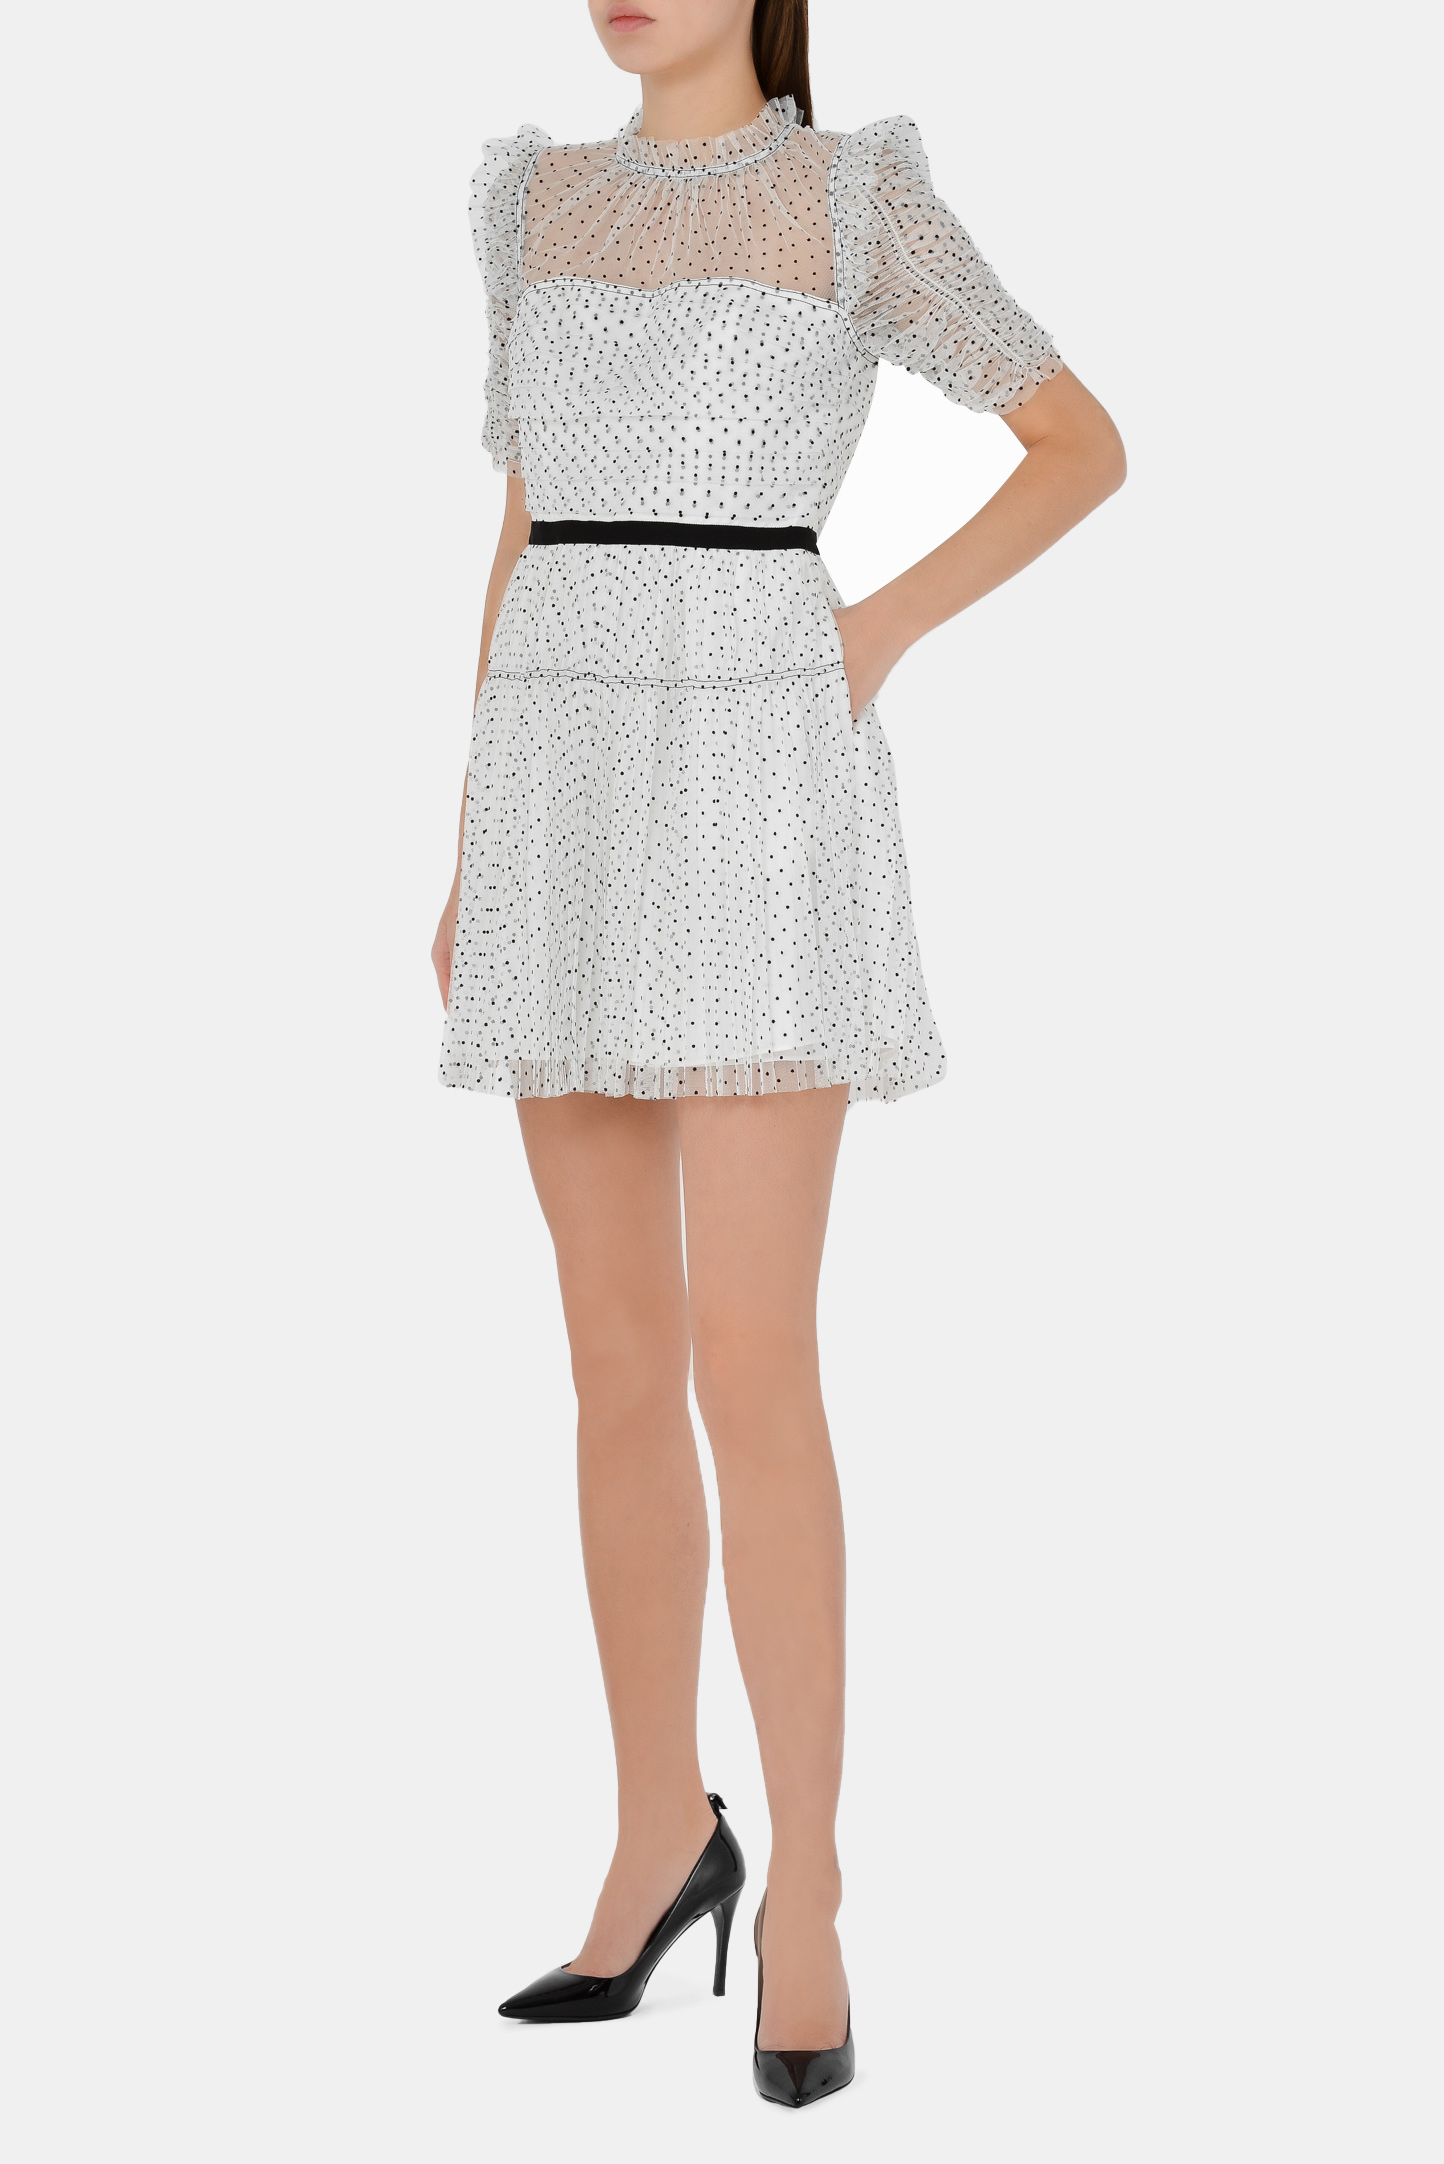 Платье SELF PORTRAIT RS21-043P, цвет: Черно-белый, Женский